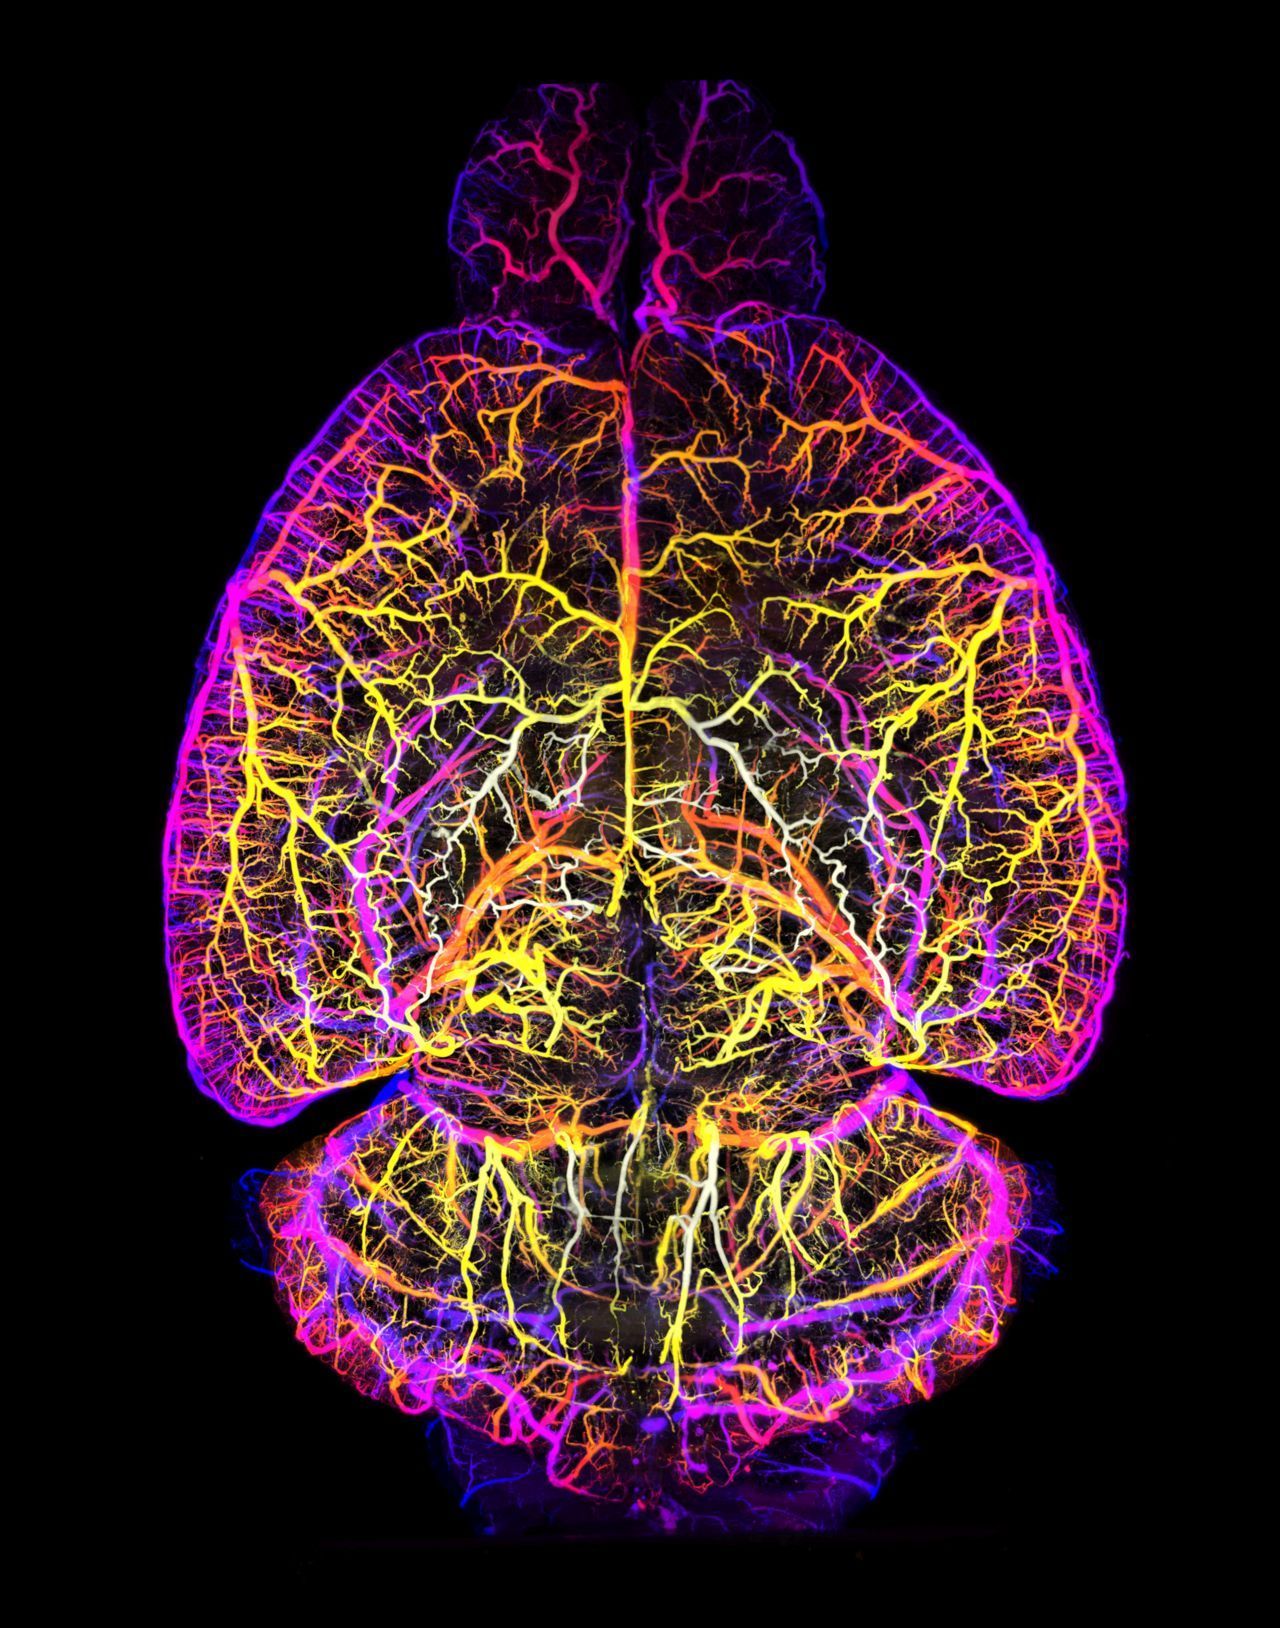 Hier siehst du das Gehirn mit seinem Gefäßsystem.